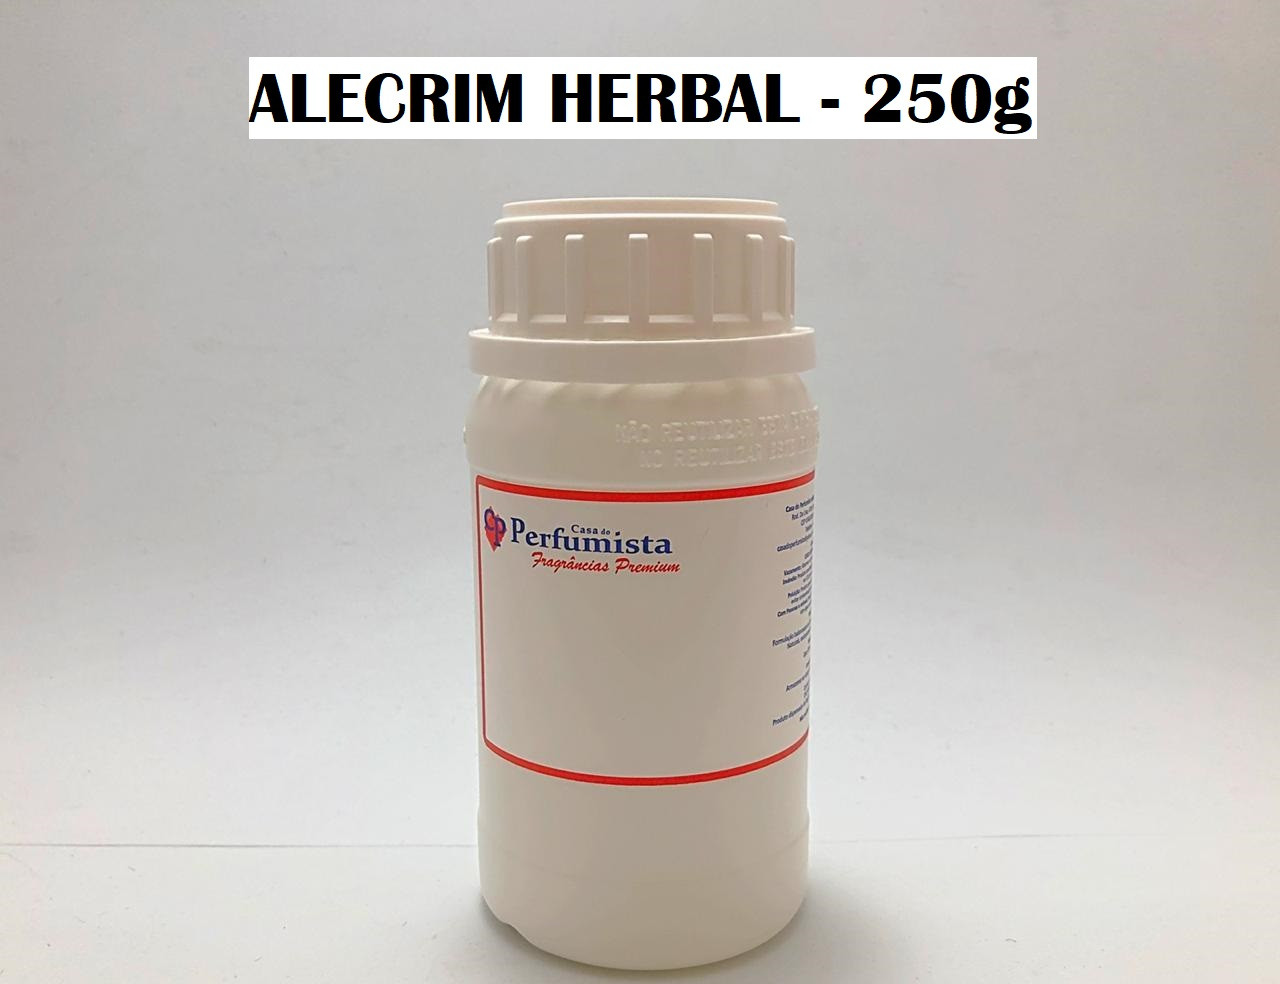 ALECRIM HERBAL - 250g